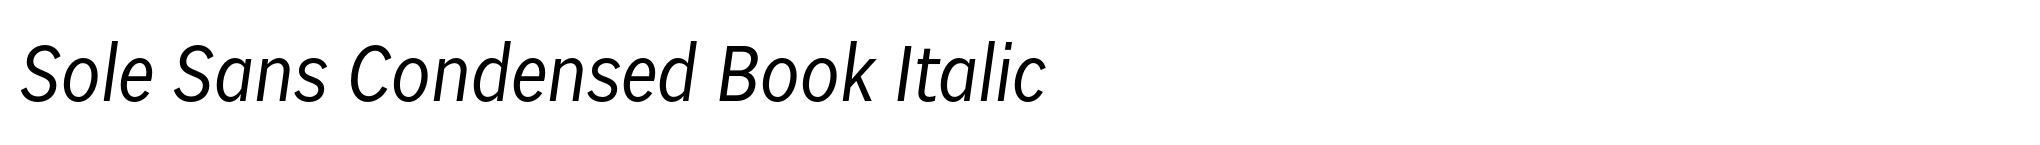 Sole Sans Condensed Book Italic image